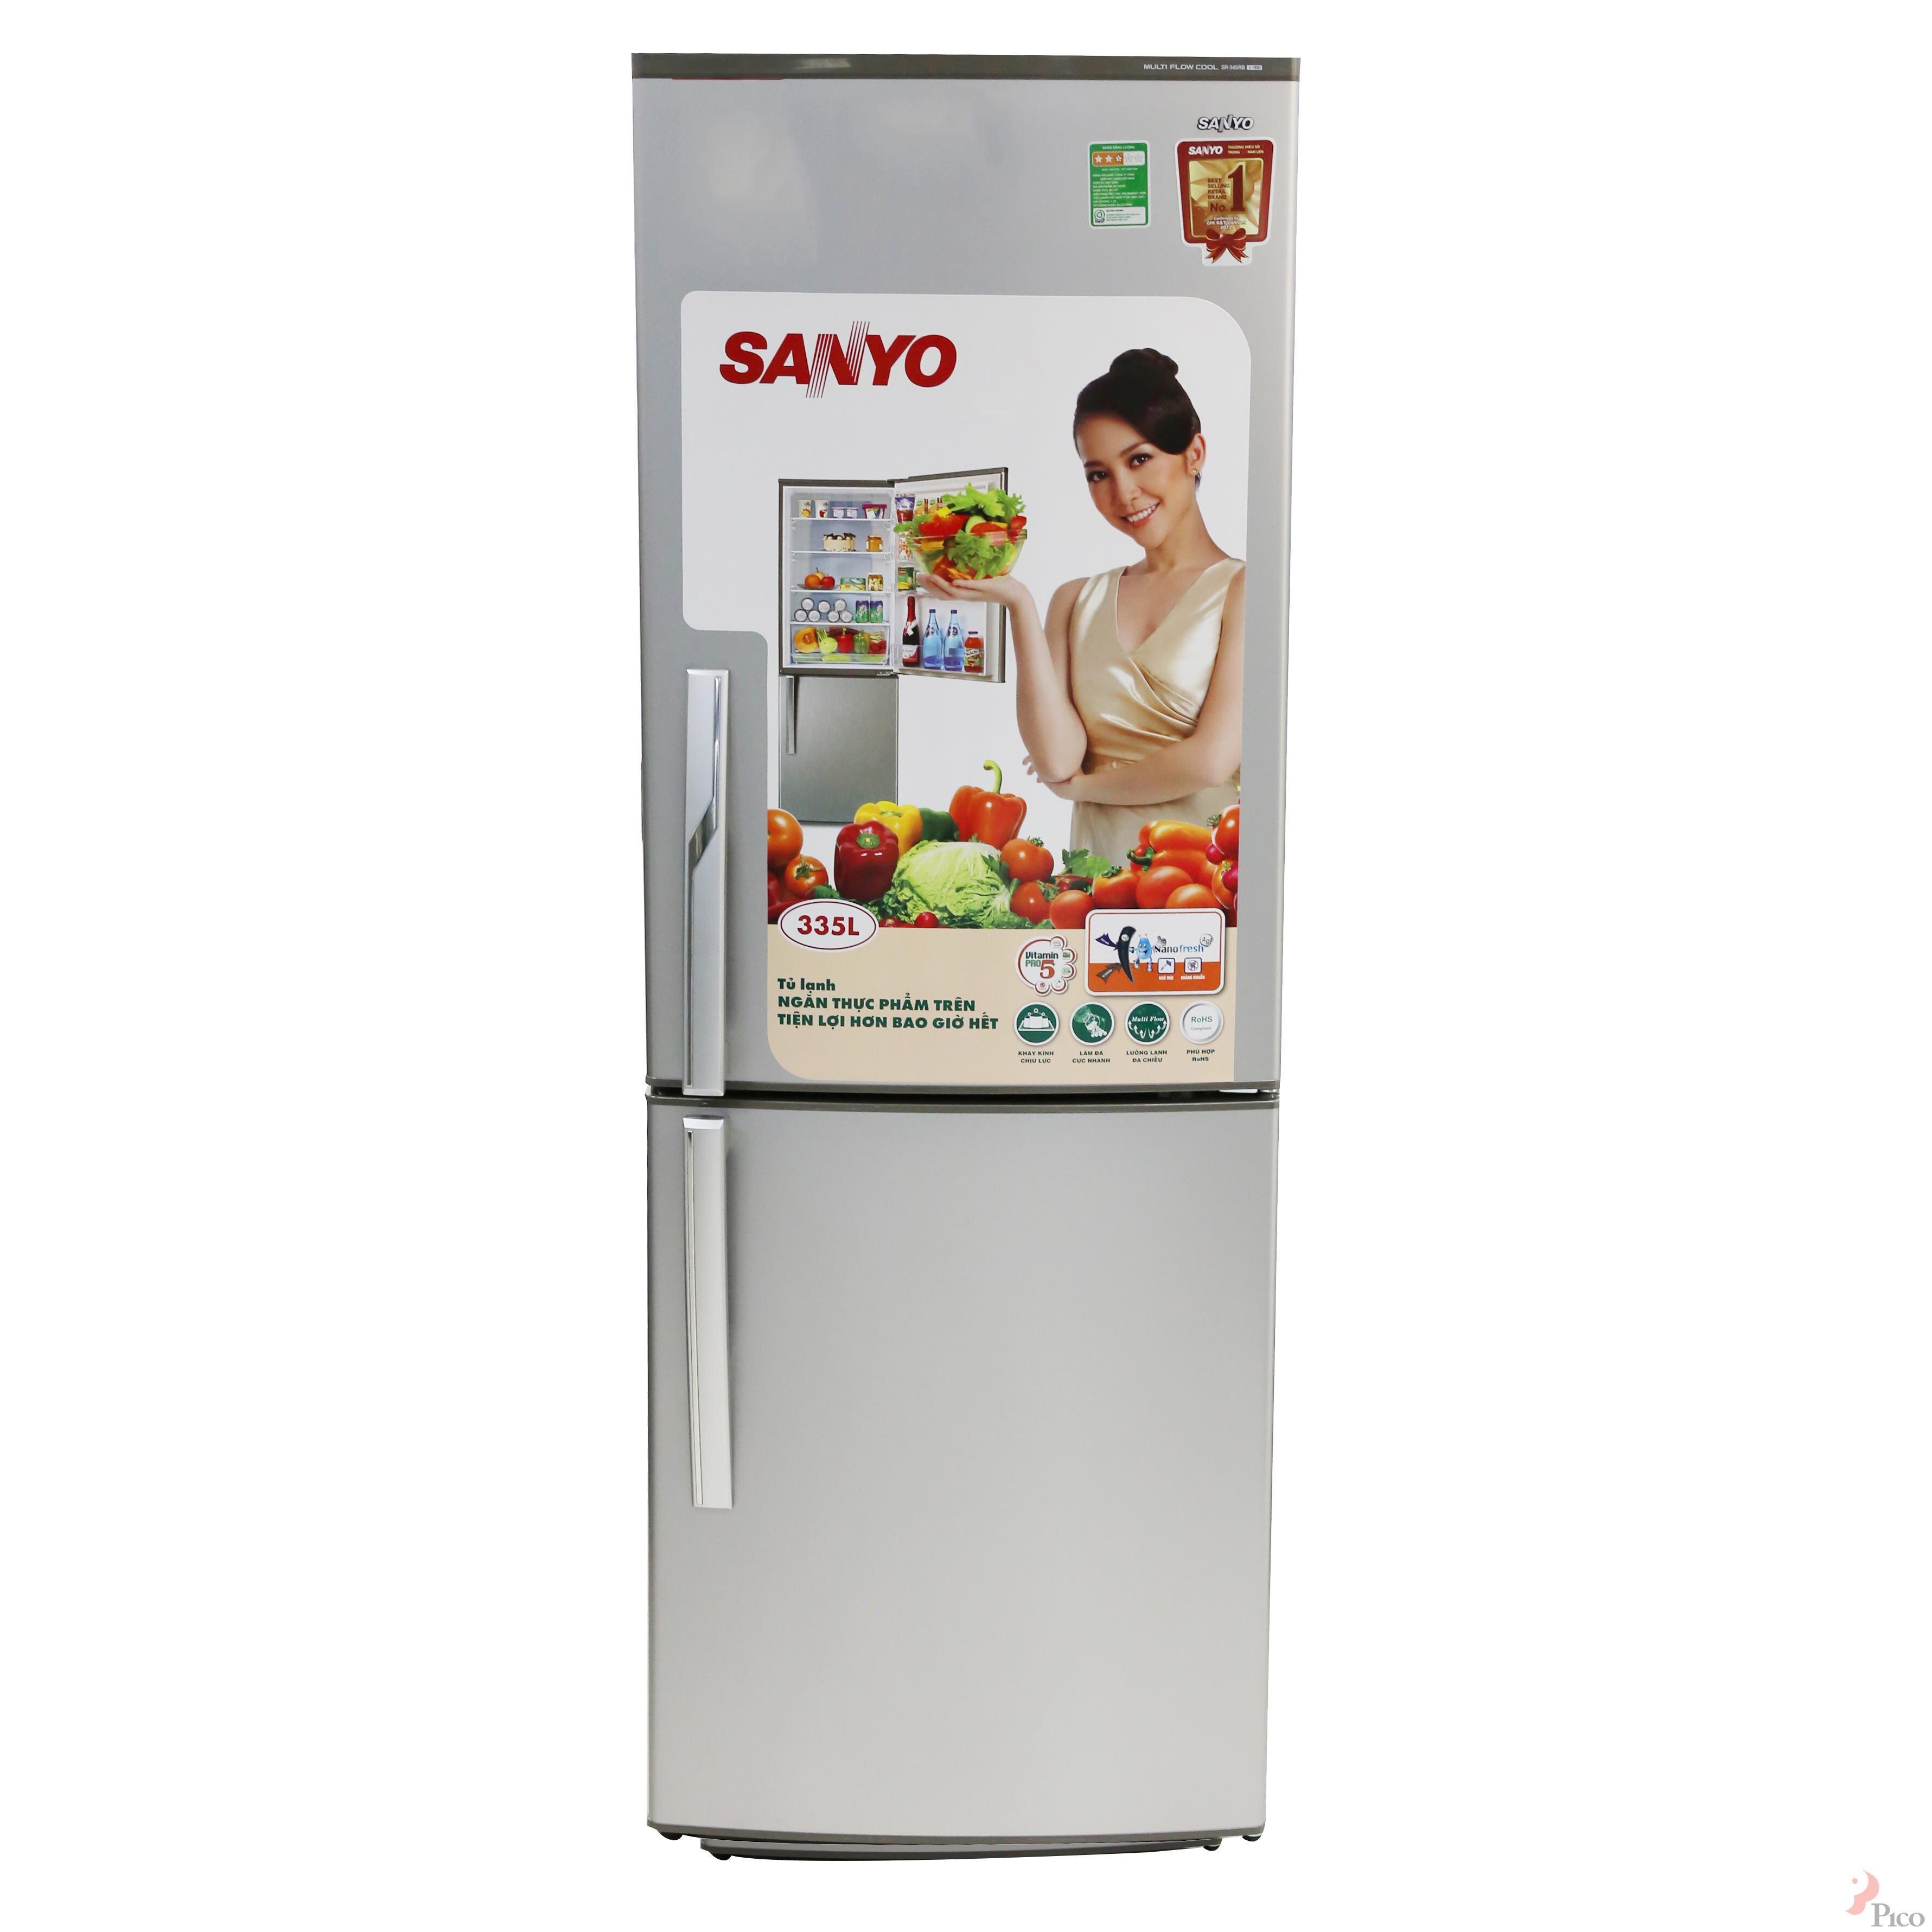 Tủ lạnh Sanyo giá rẻ nhất bao nhiêu tiền Tết Nguyên Đán 2018